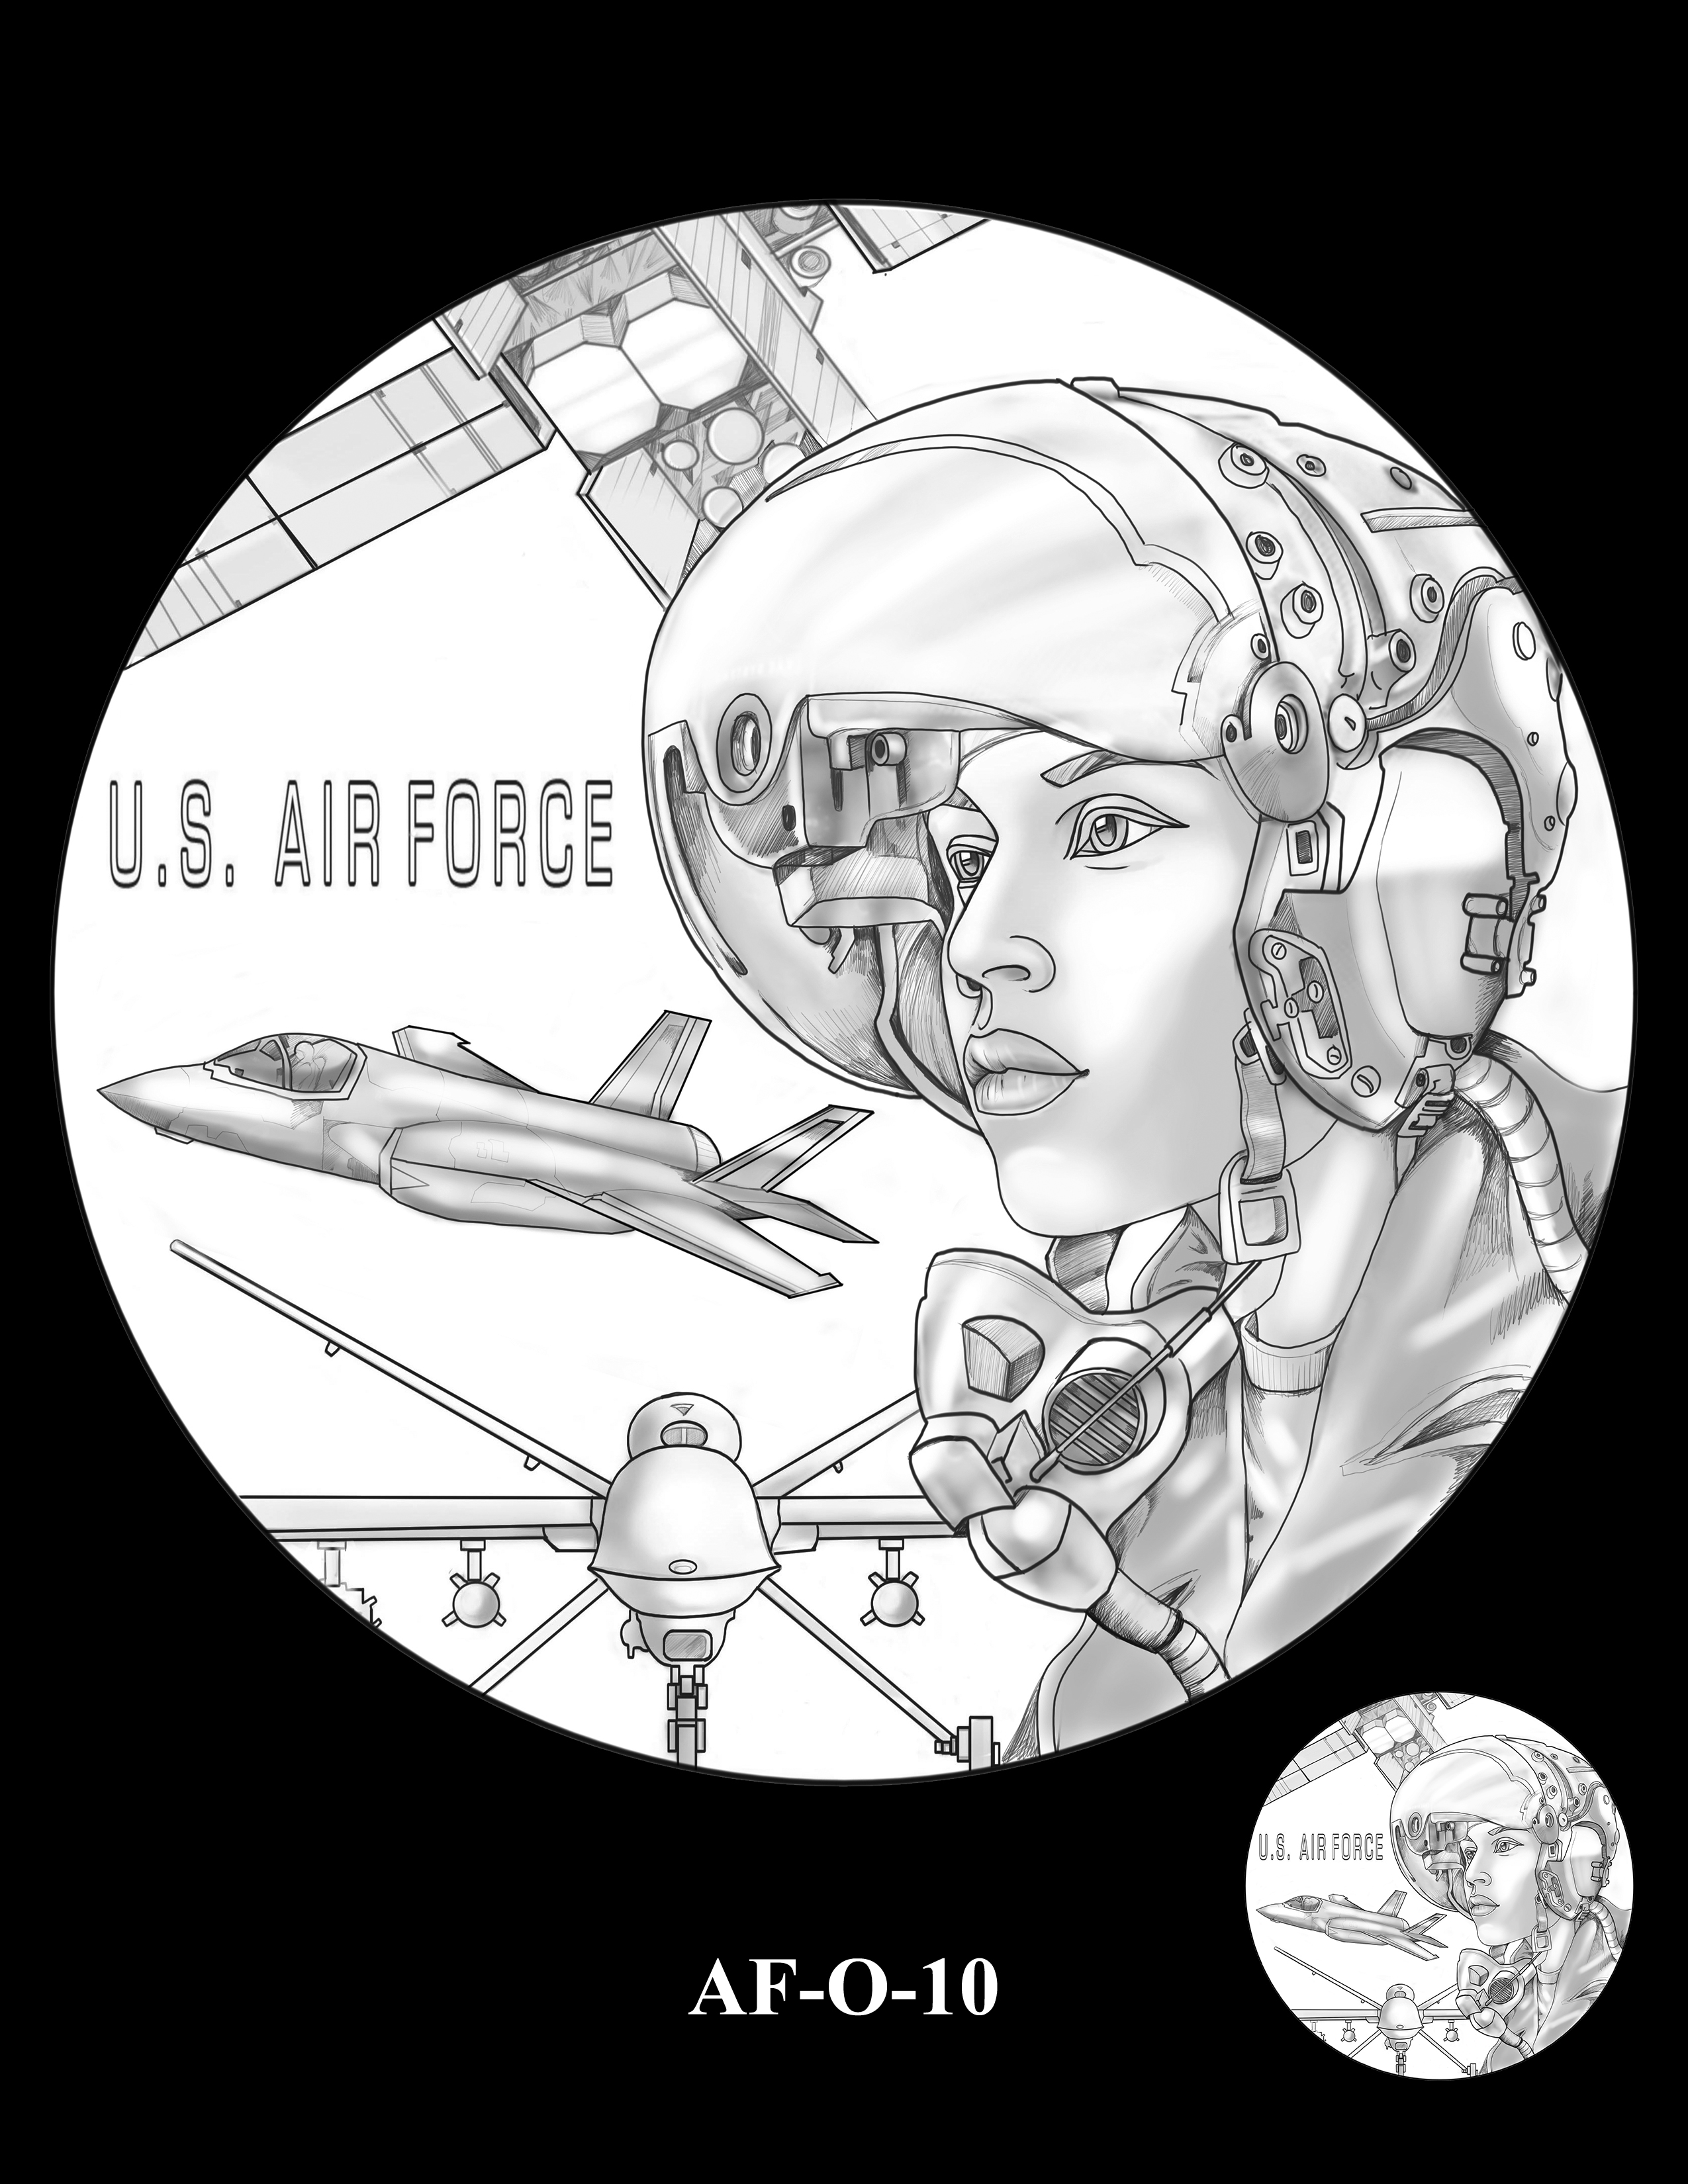 AF-O-10 -- Armed Forces Medal - Air Force